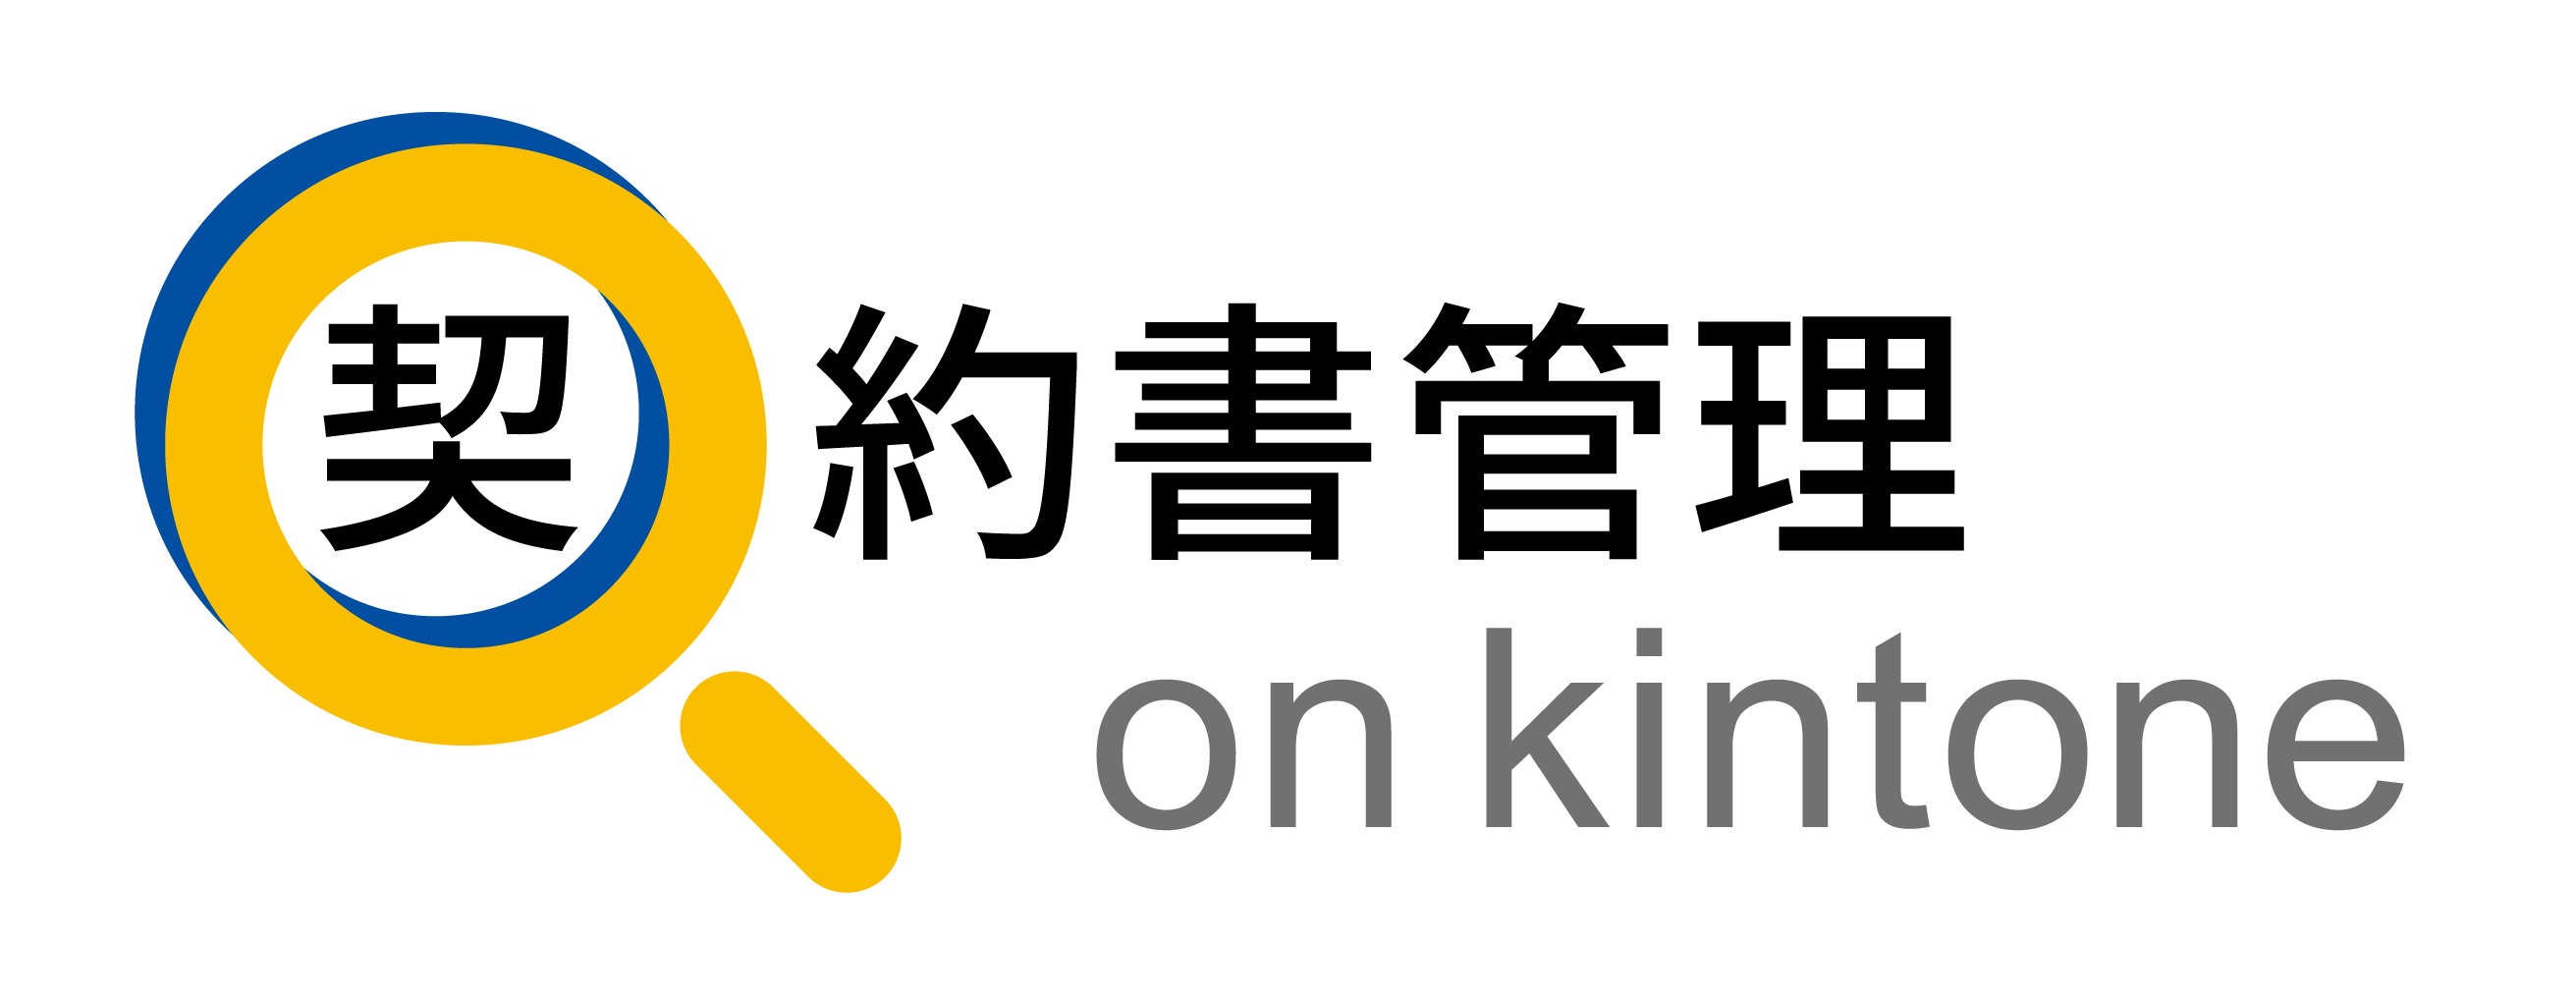 新明和ソフトテクノロジ(株)が「契約書管理 on kintone」を開発・発売